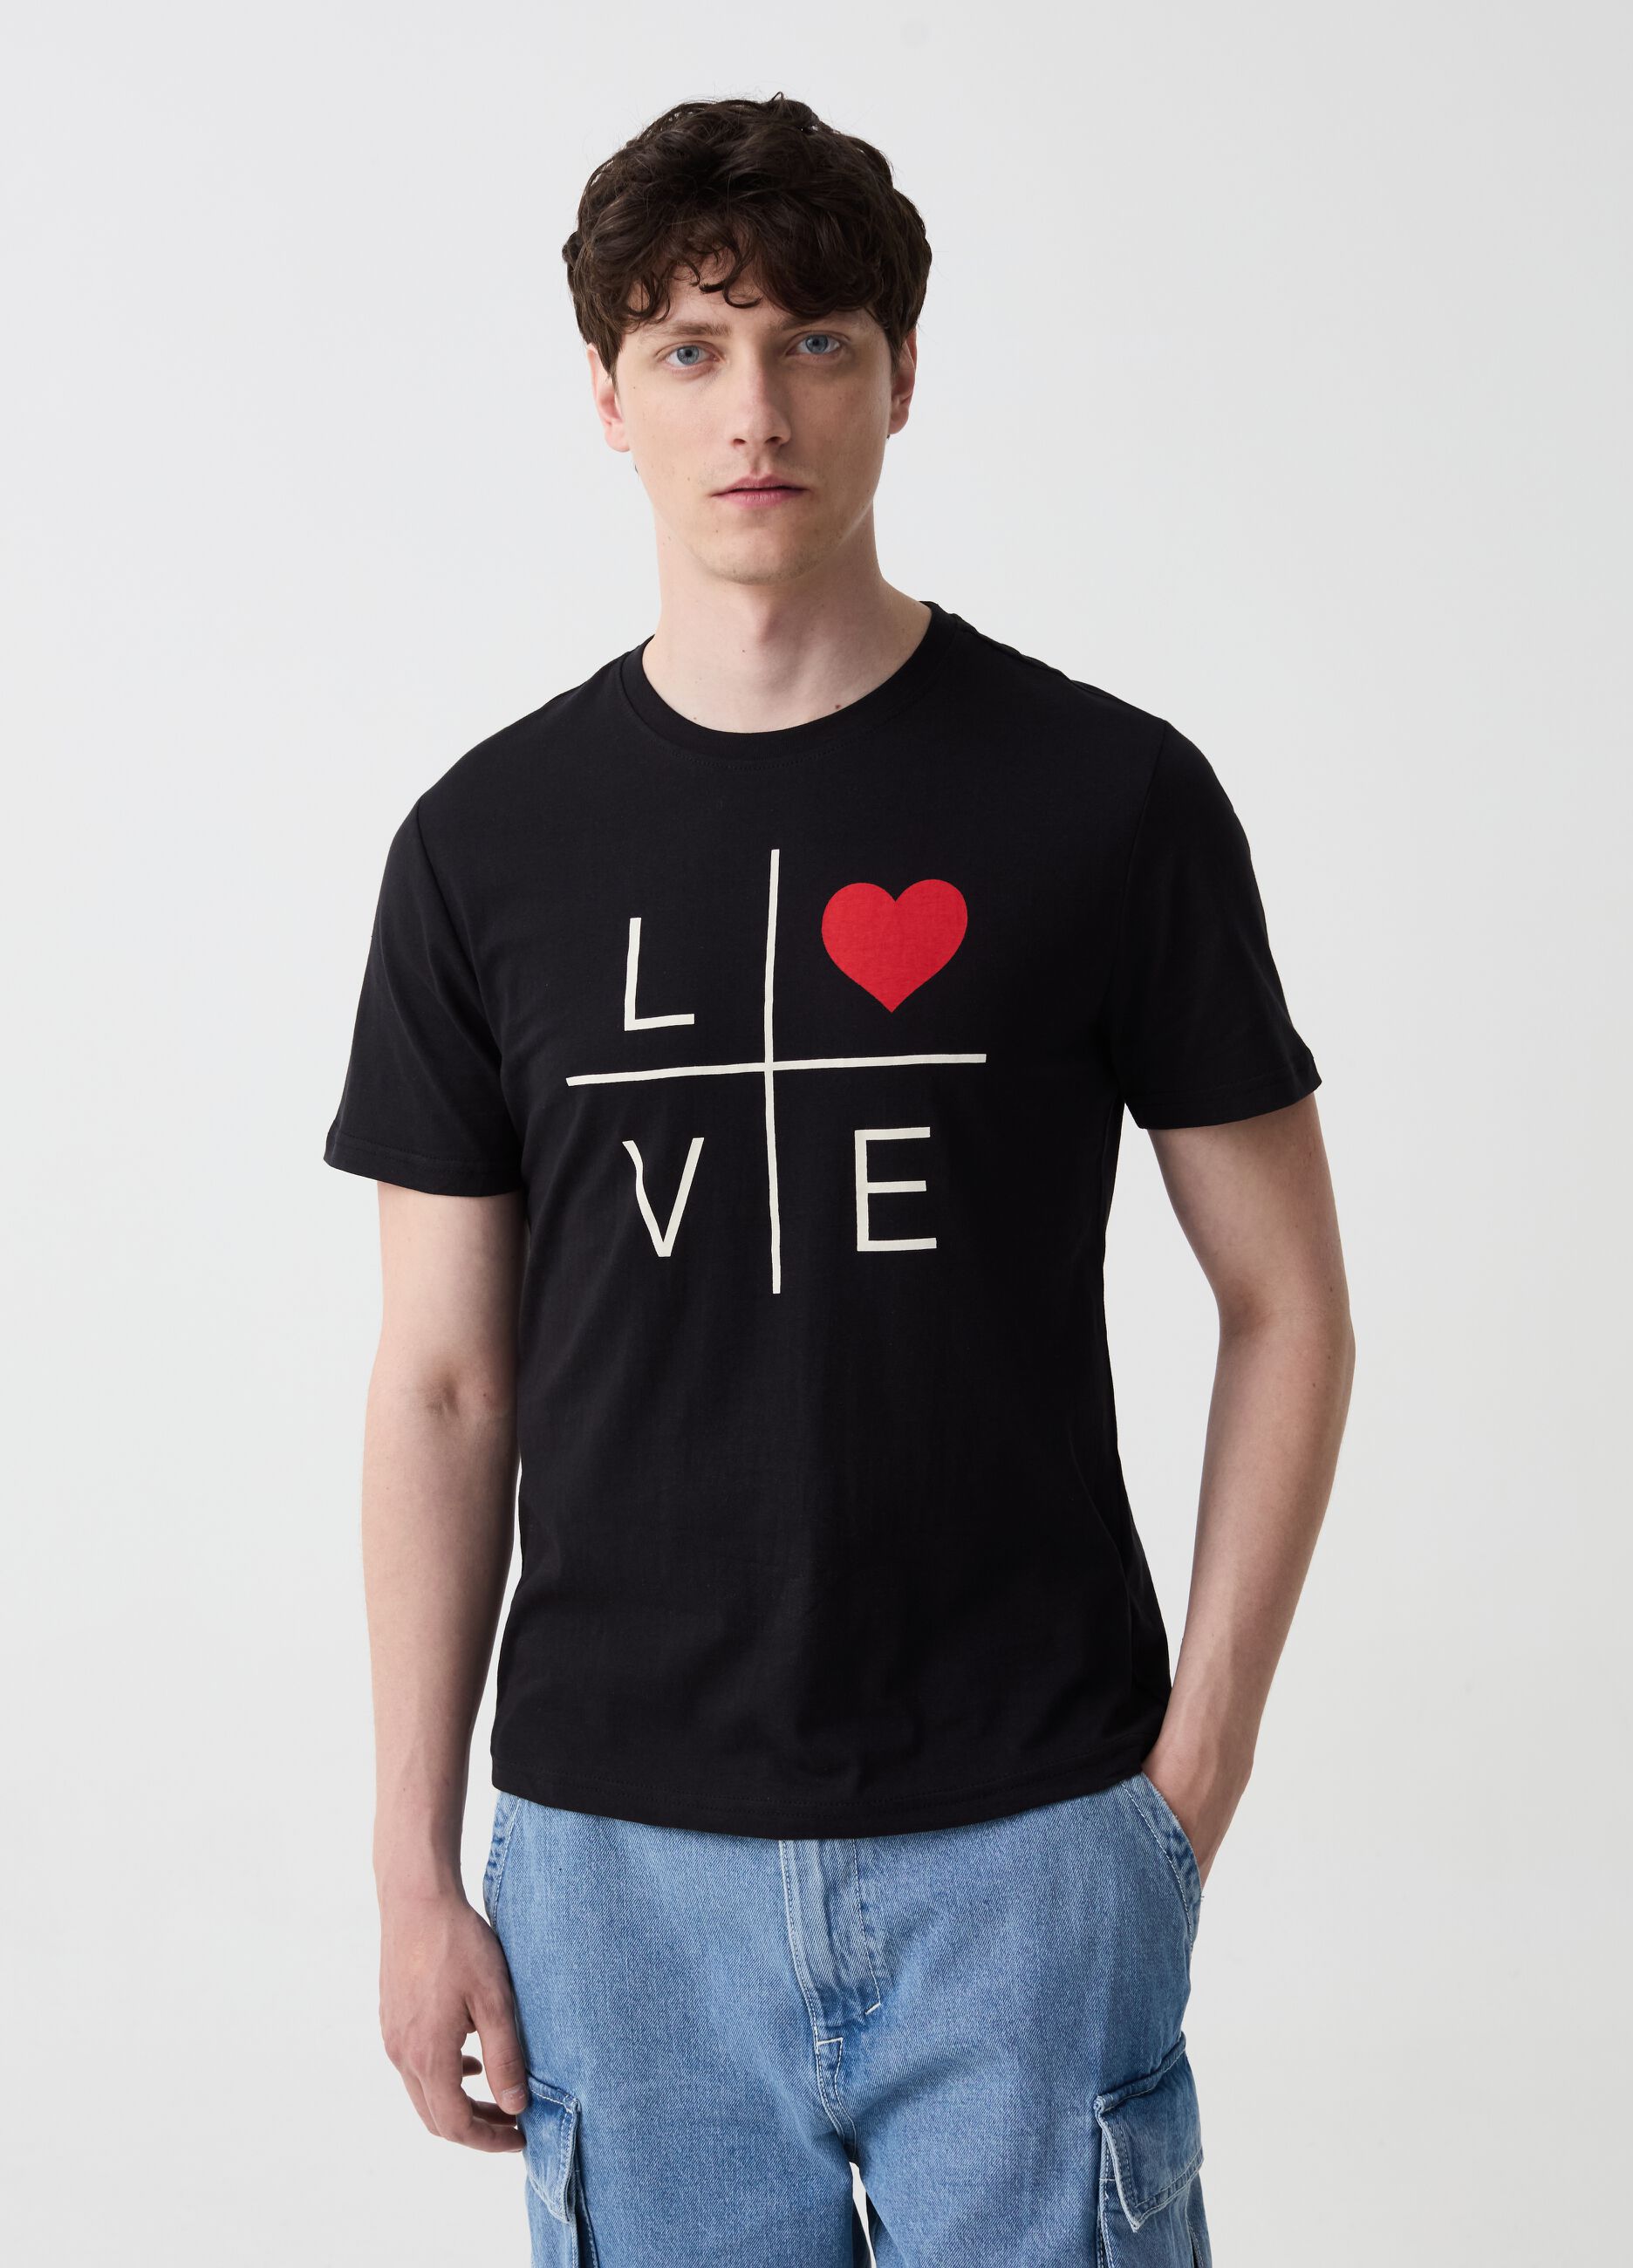 T-shirt con stampa lettering e cuore